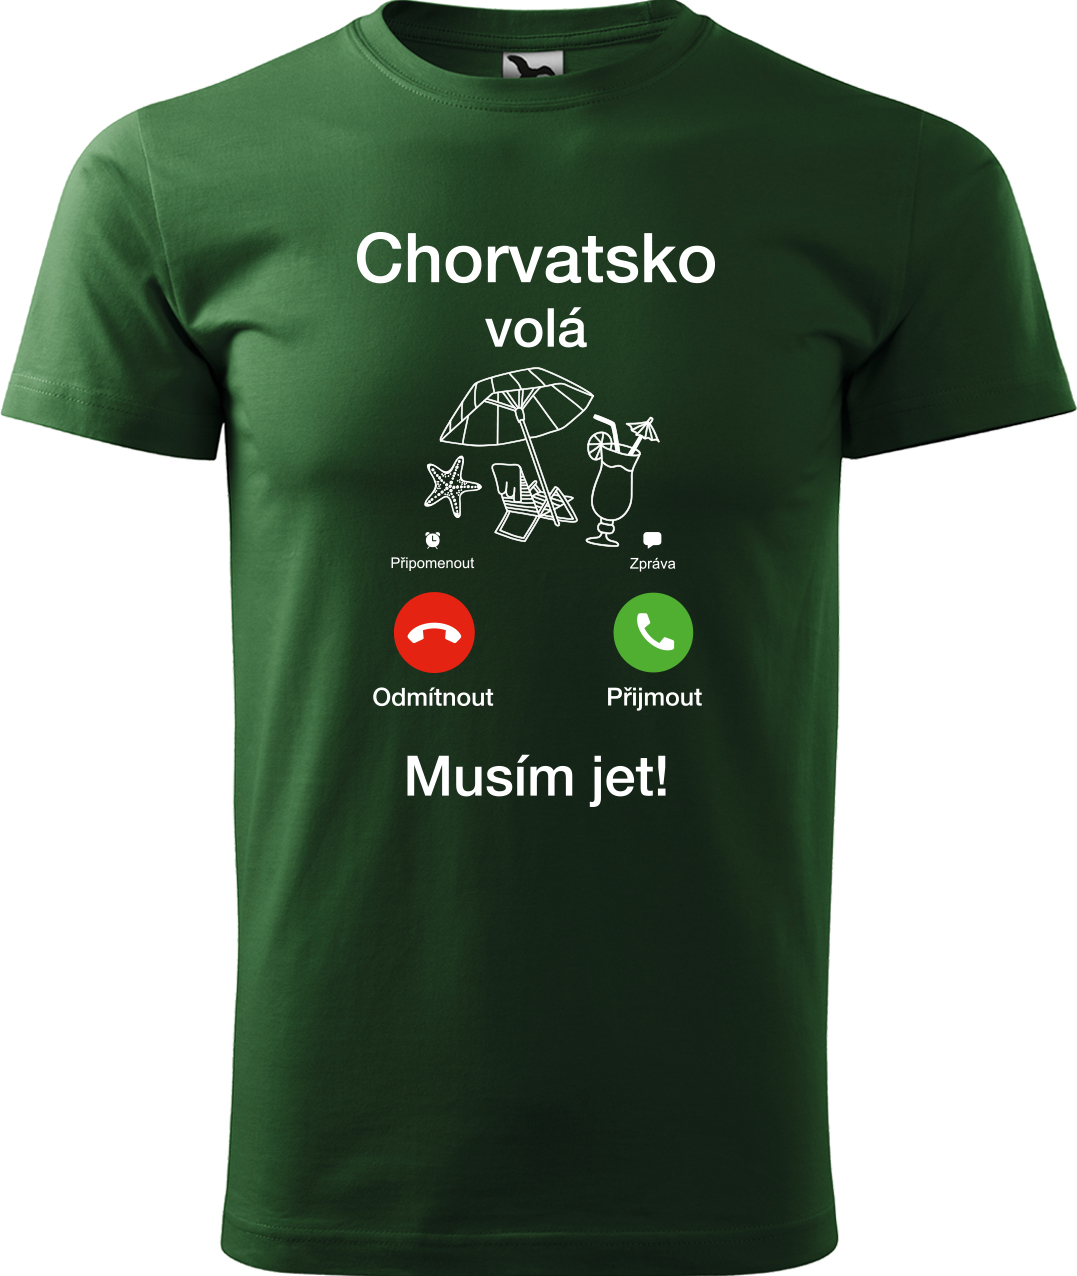 Pánské cestovatelské tričko - Chorvatsko volá - musím jet! Velikost: M, Barva: Lahvově zelená (06), Střih: pánský